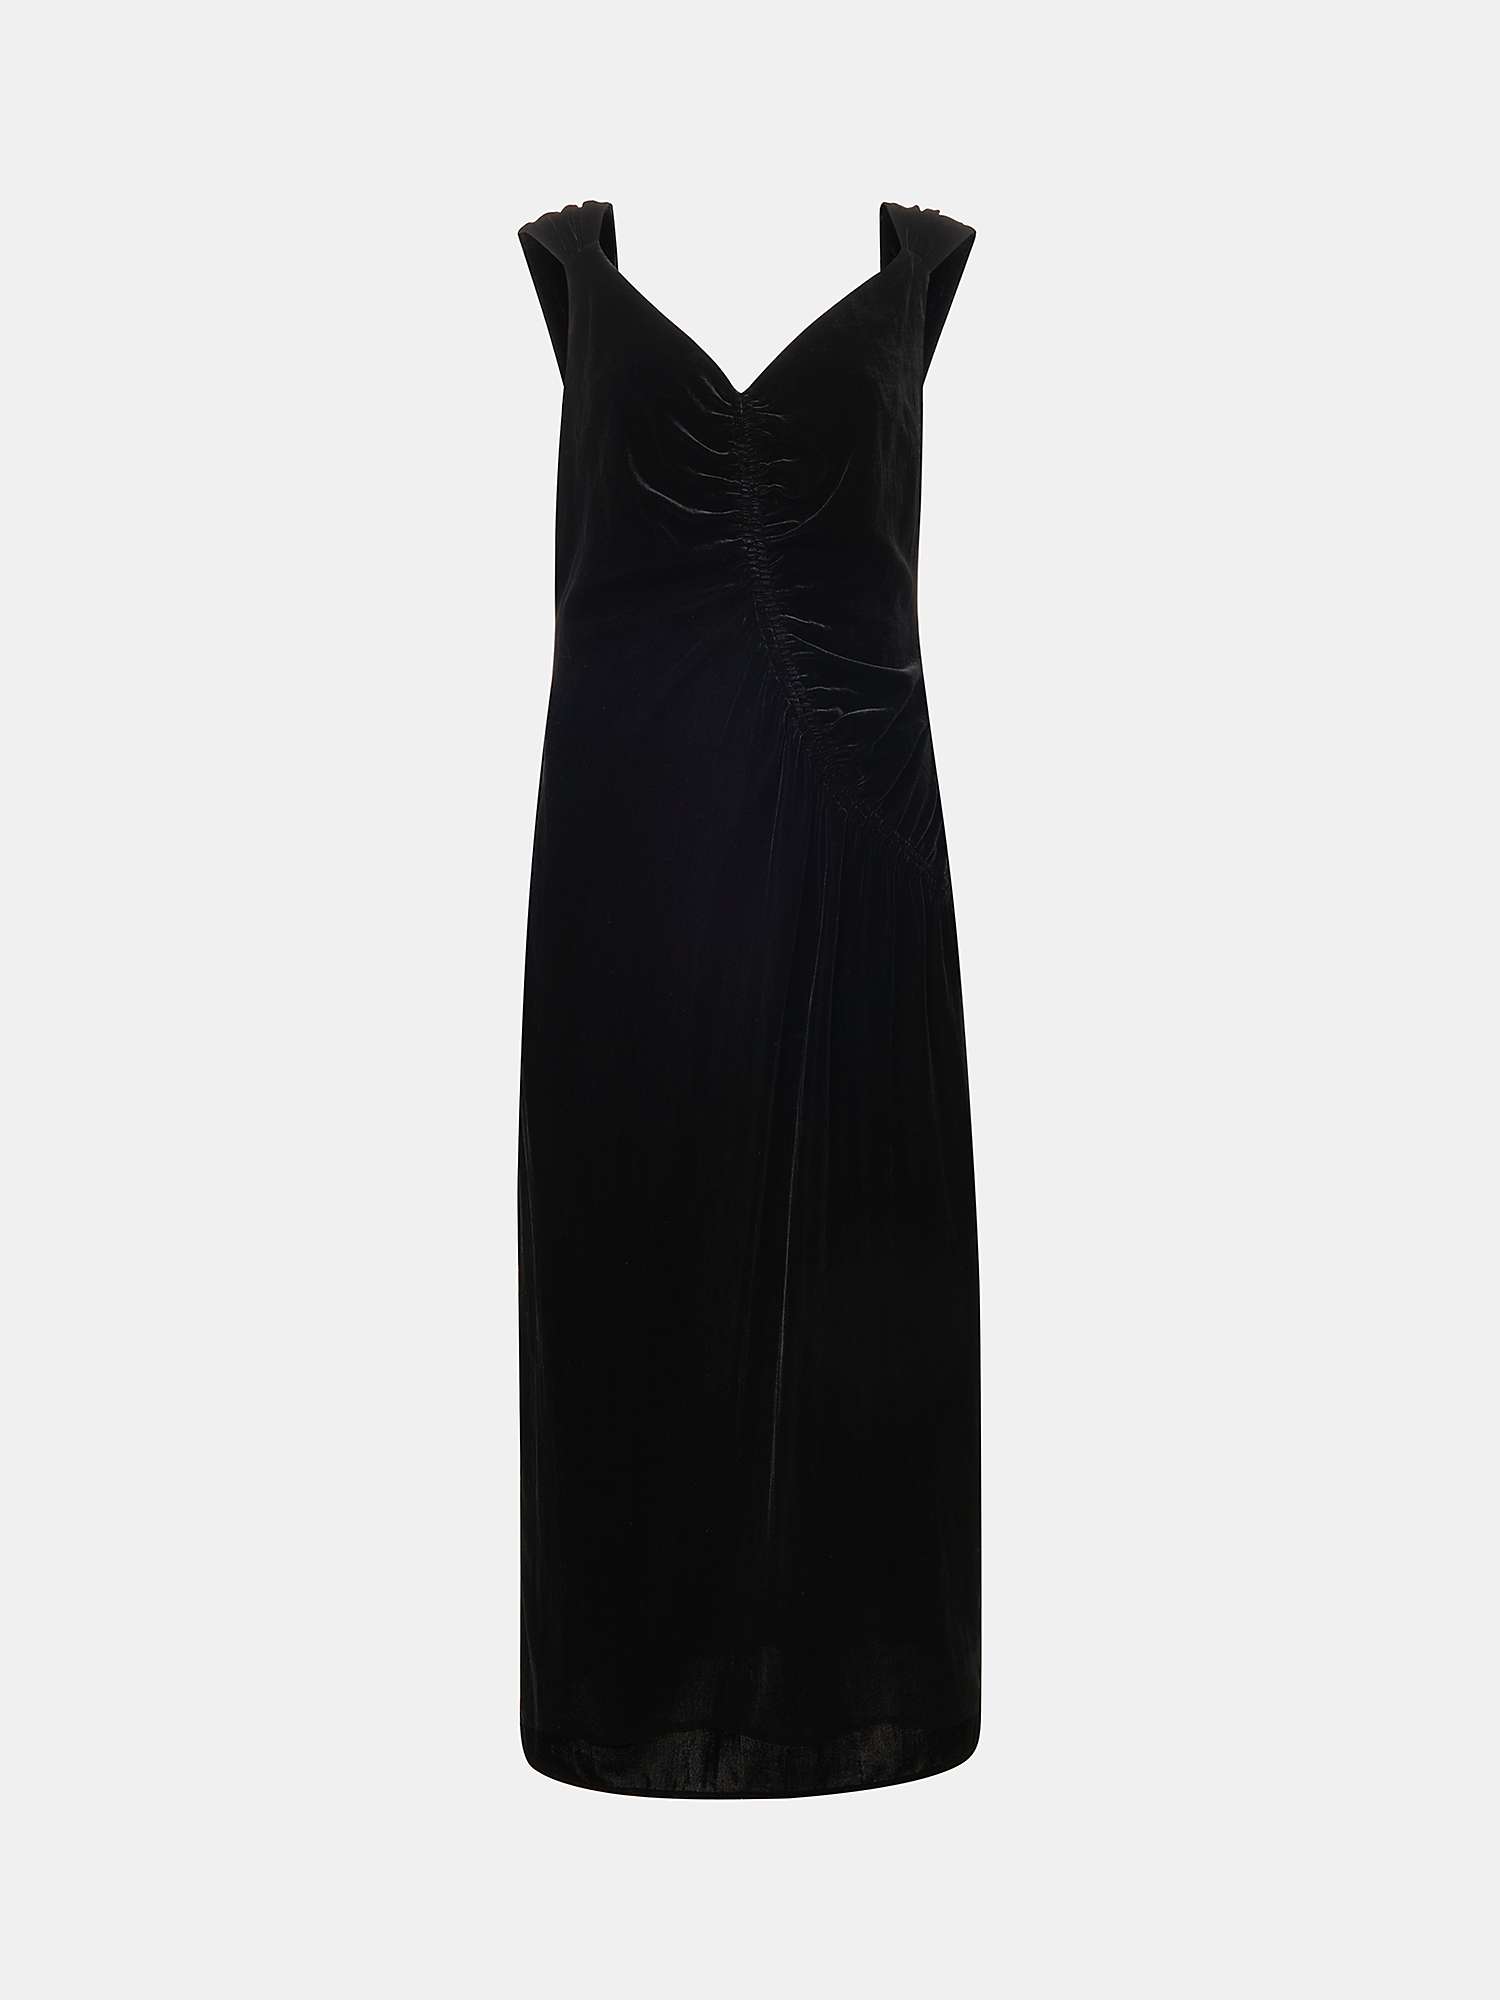 Whistles Draped Velvet Midi Dress, Black at John Lewis & Partners